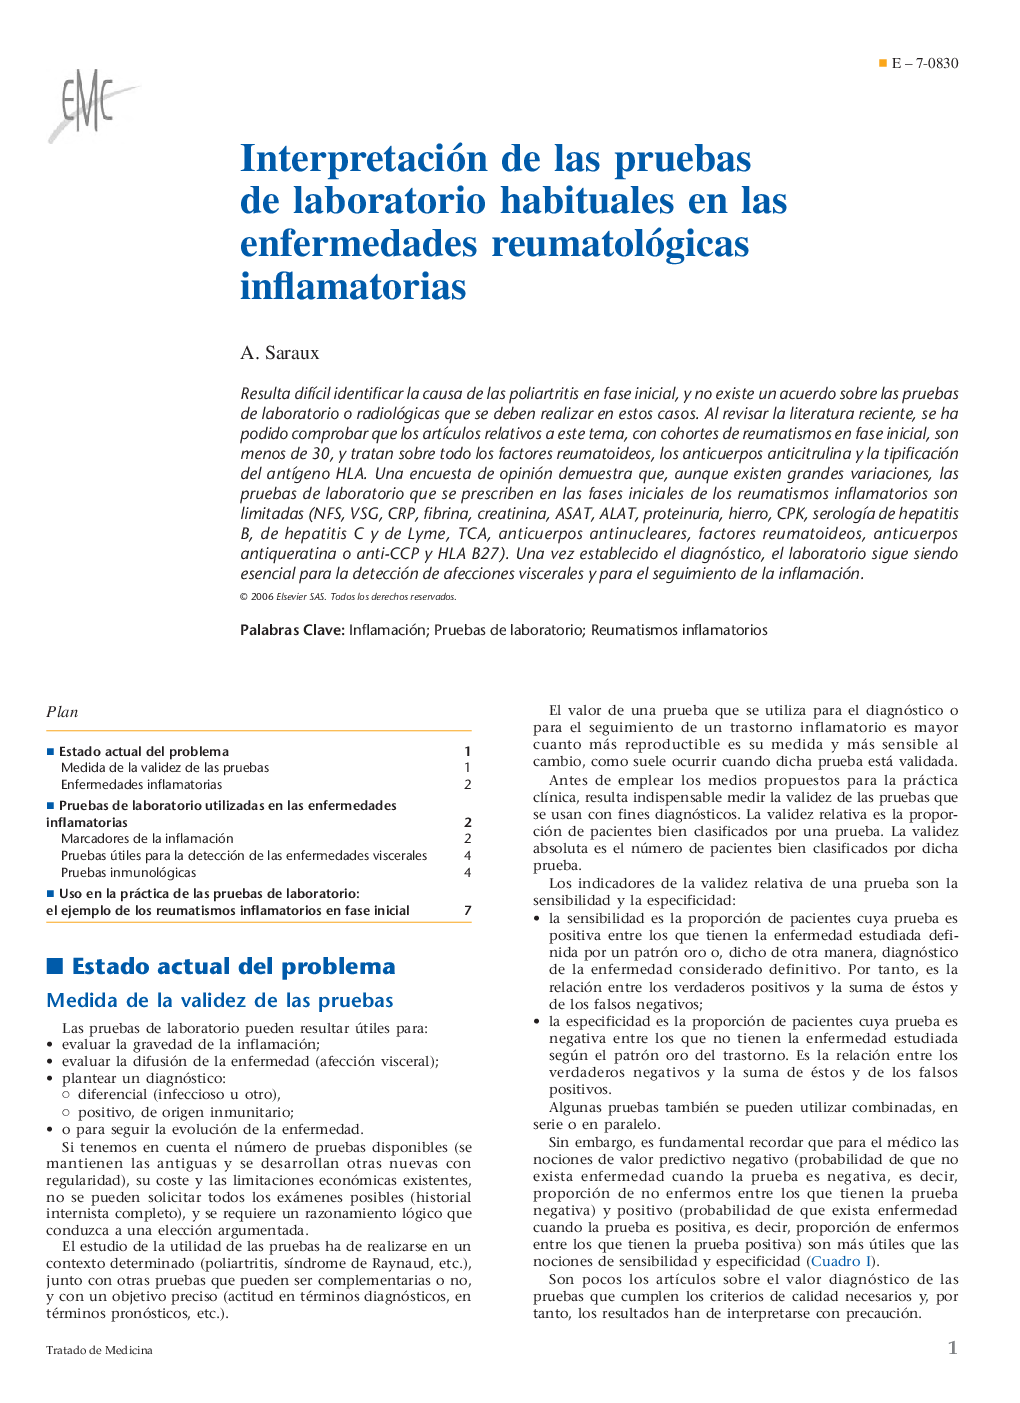 Interpretación de las pruebas de laboratorio habituales en las enfermedades reumatológicas inflamatorias